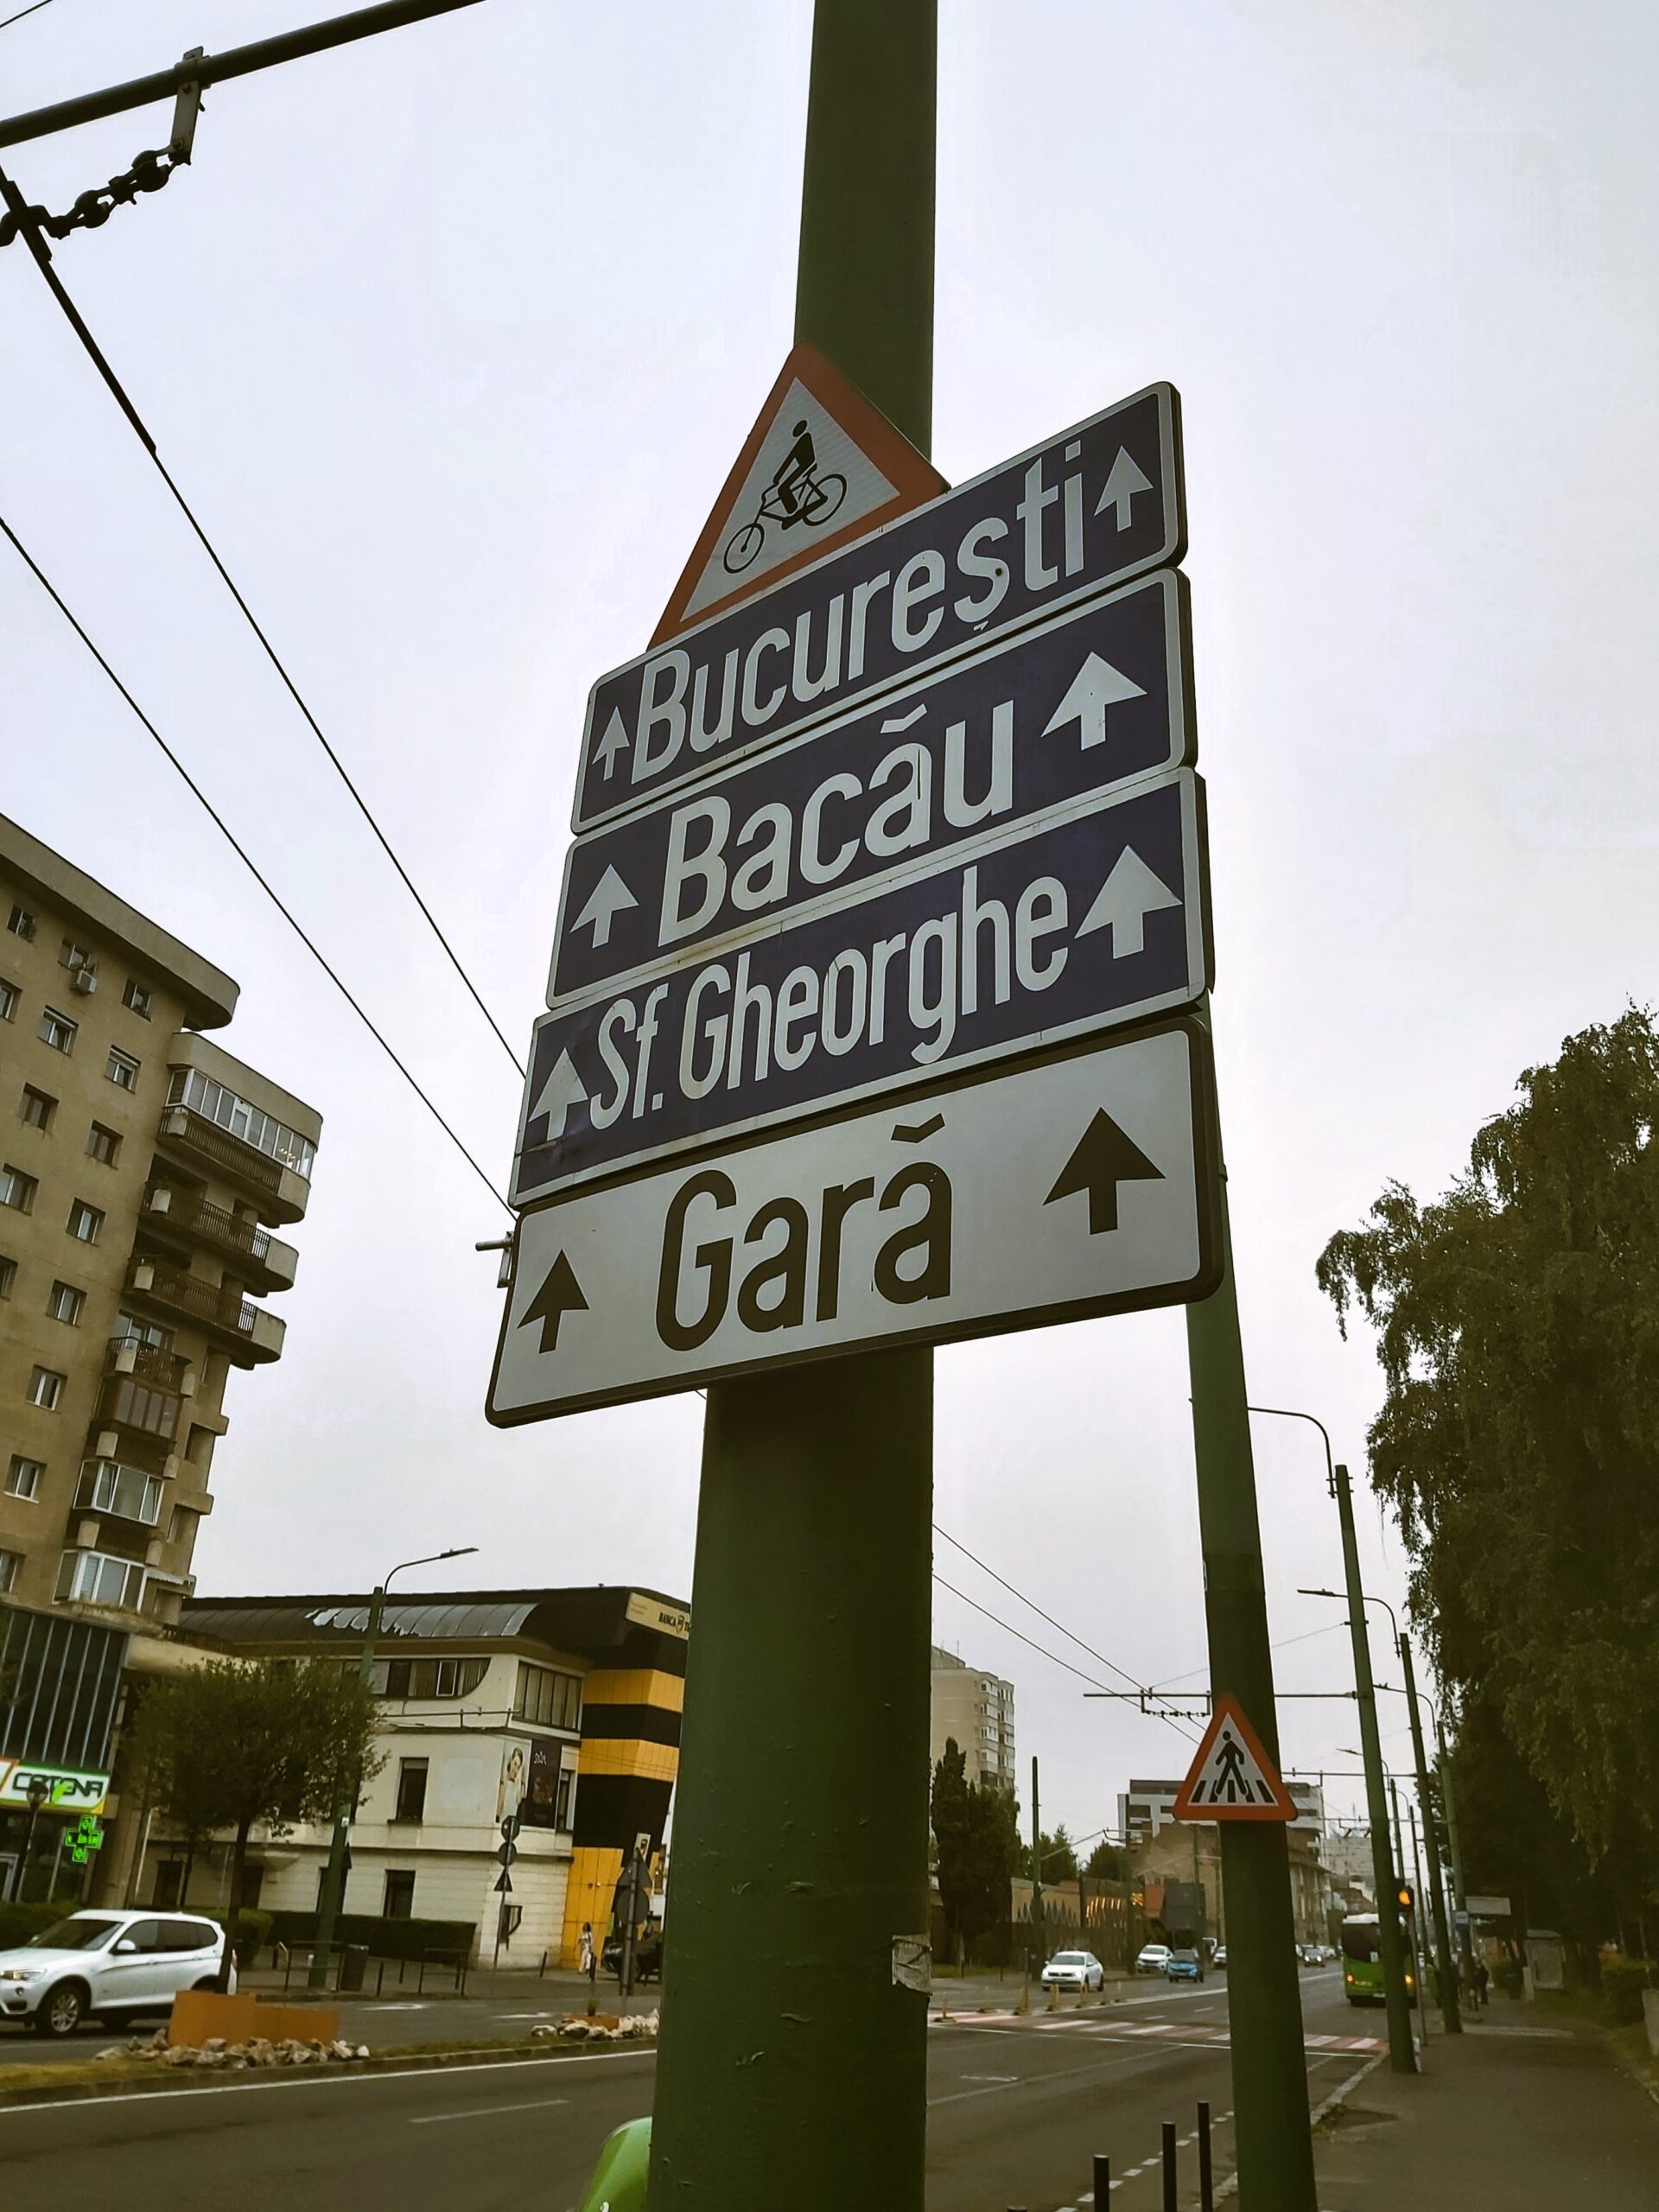 A street sign in București, Romania